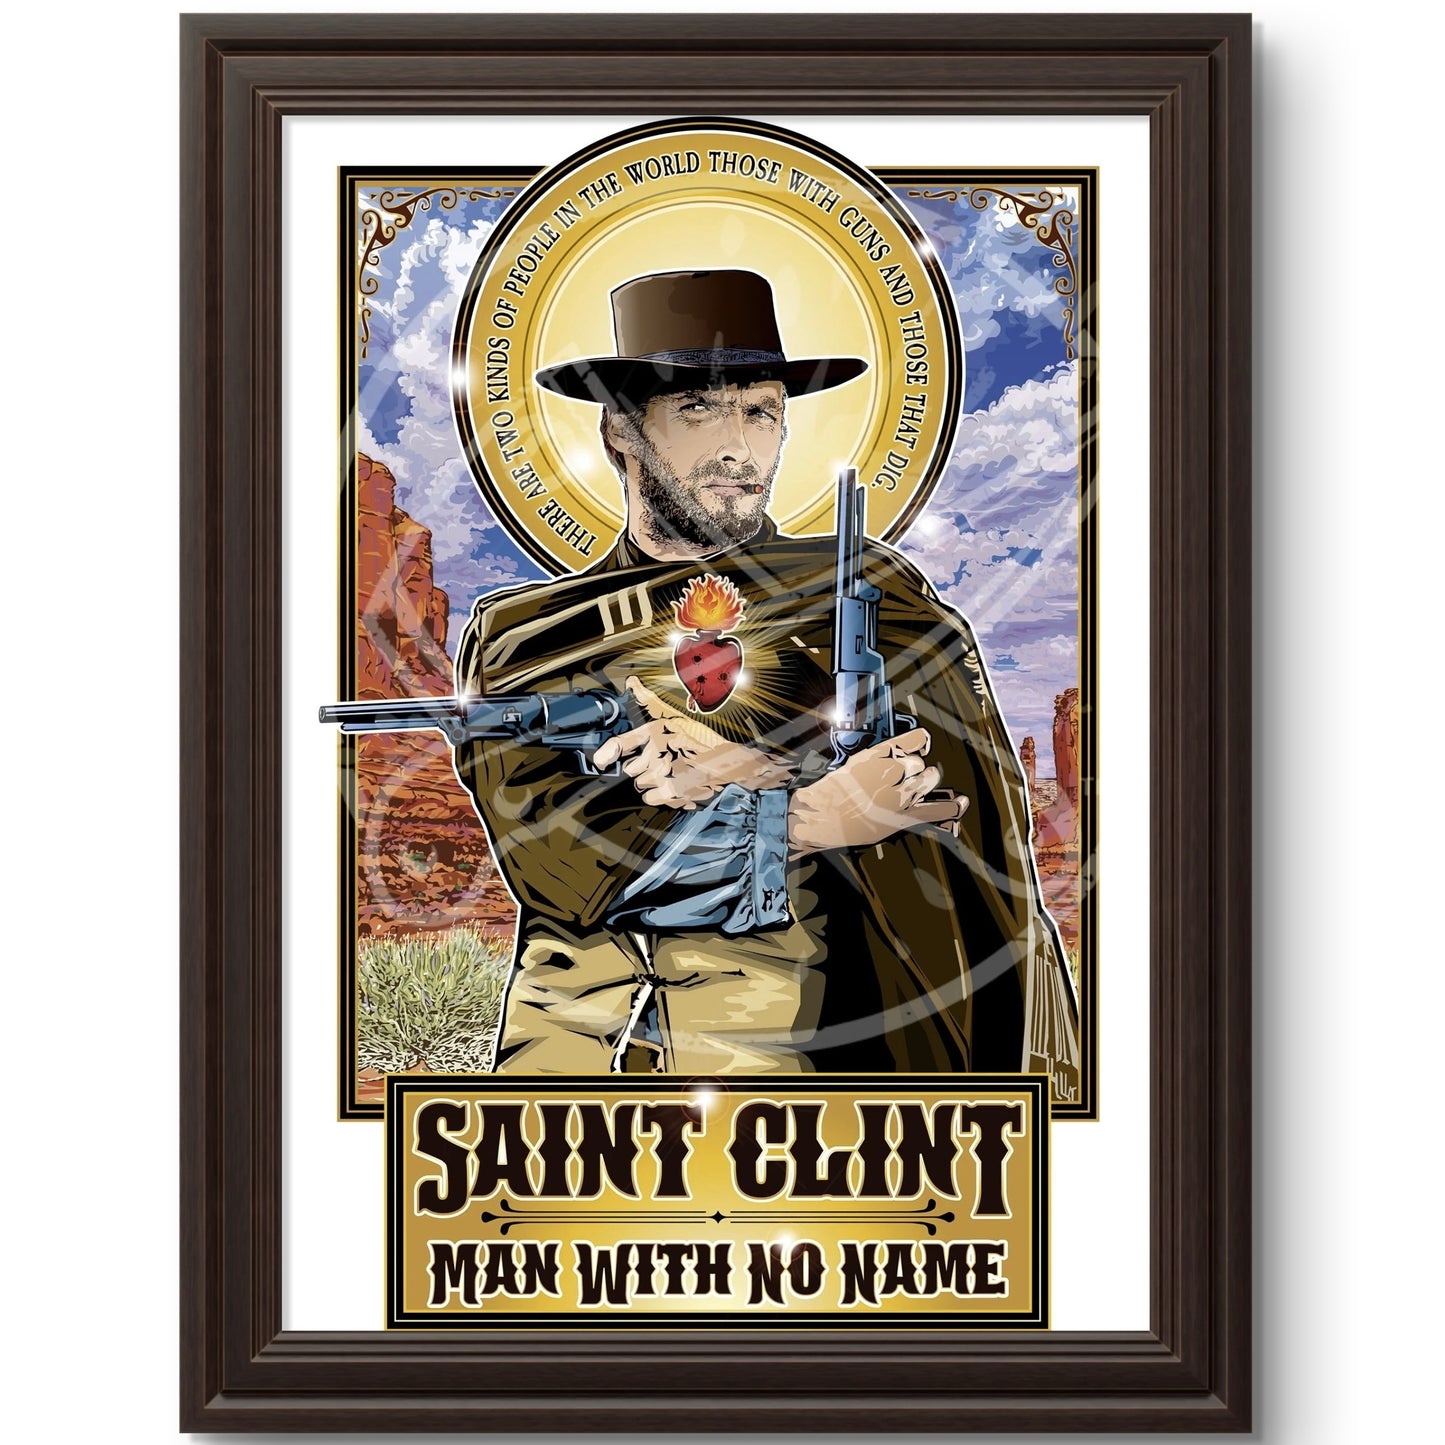 Saint Clint Man With No Name Poster Cleaverandblade.com